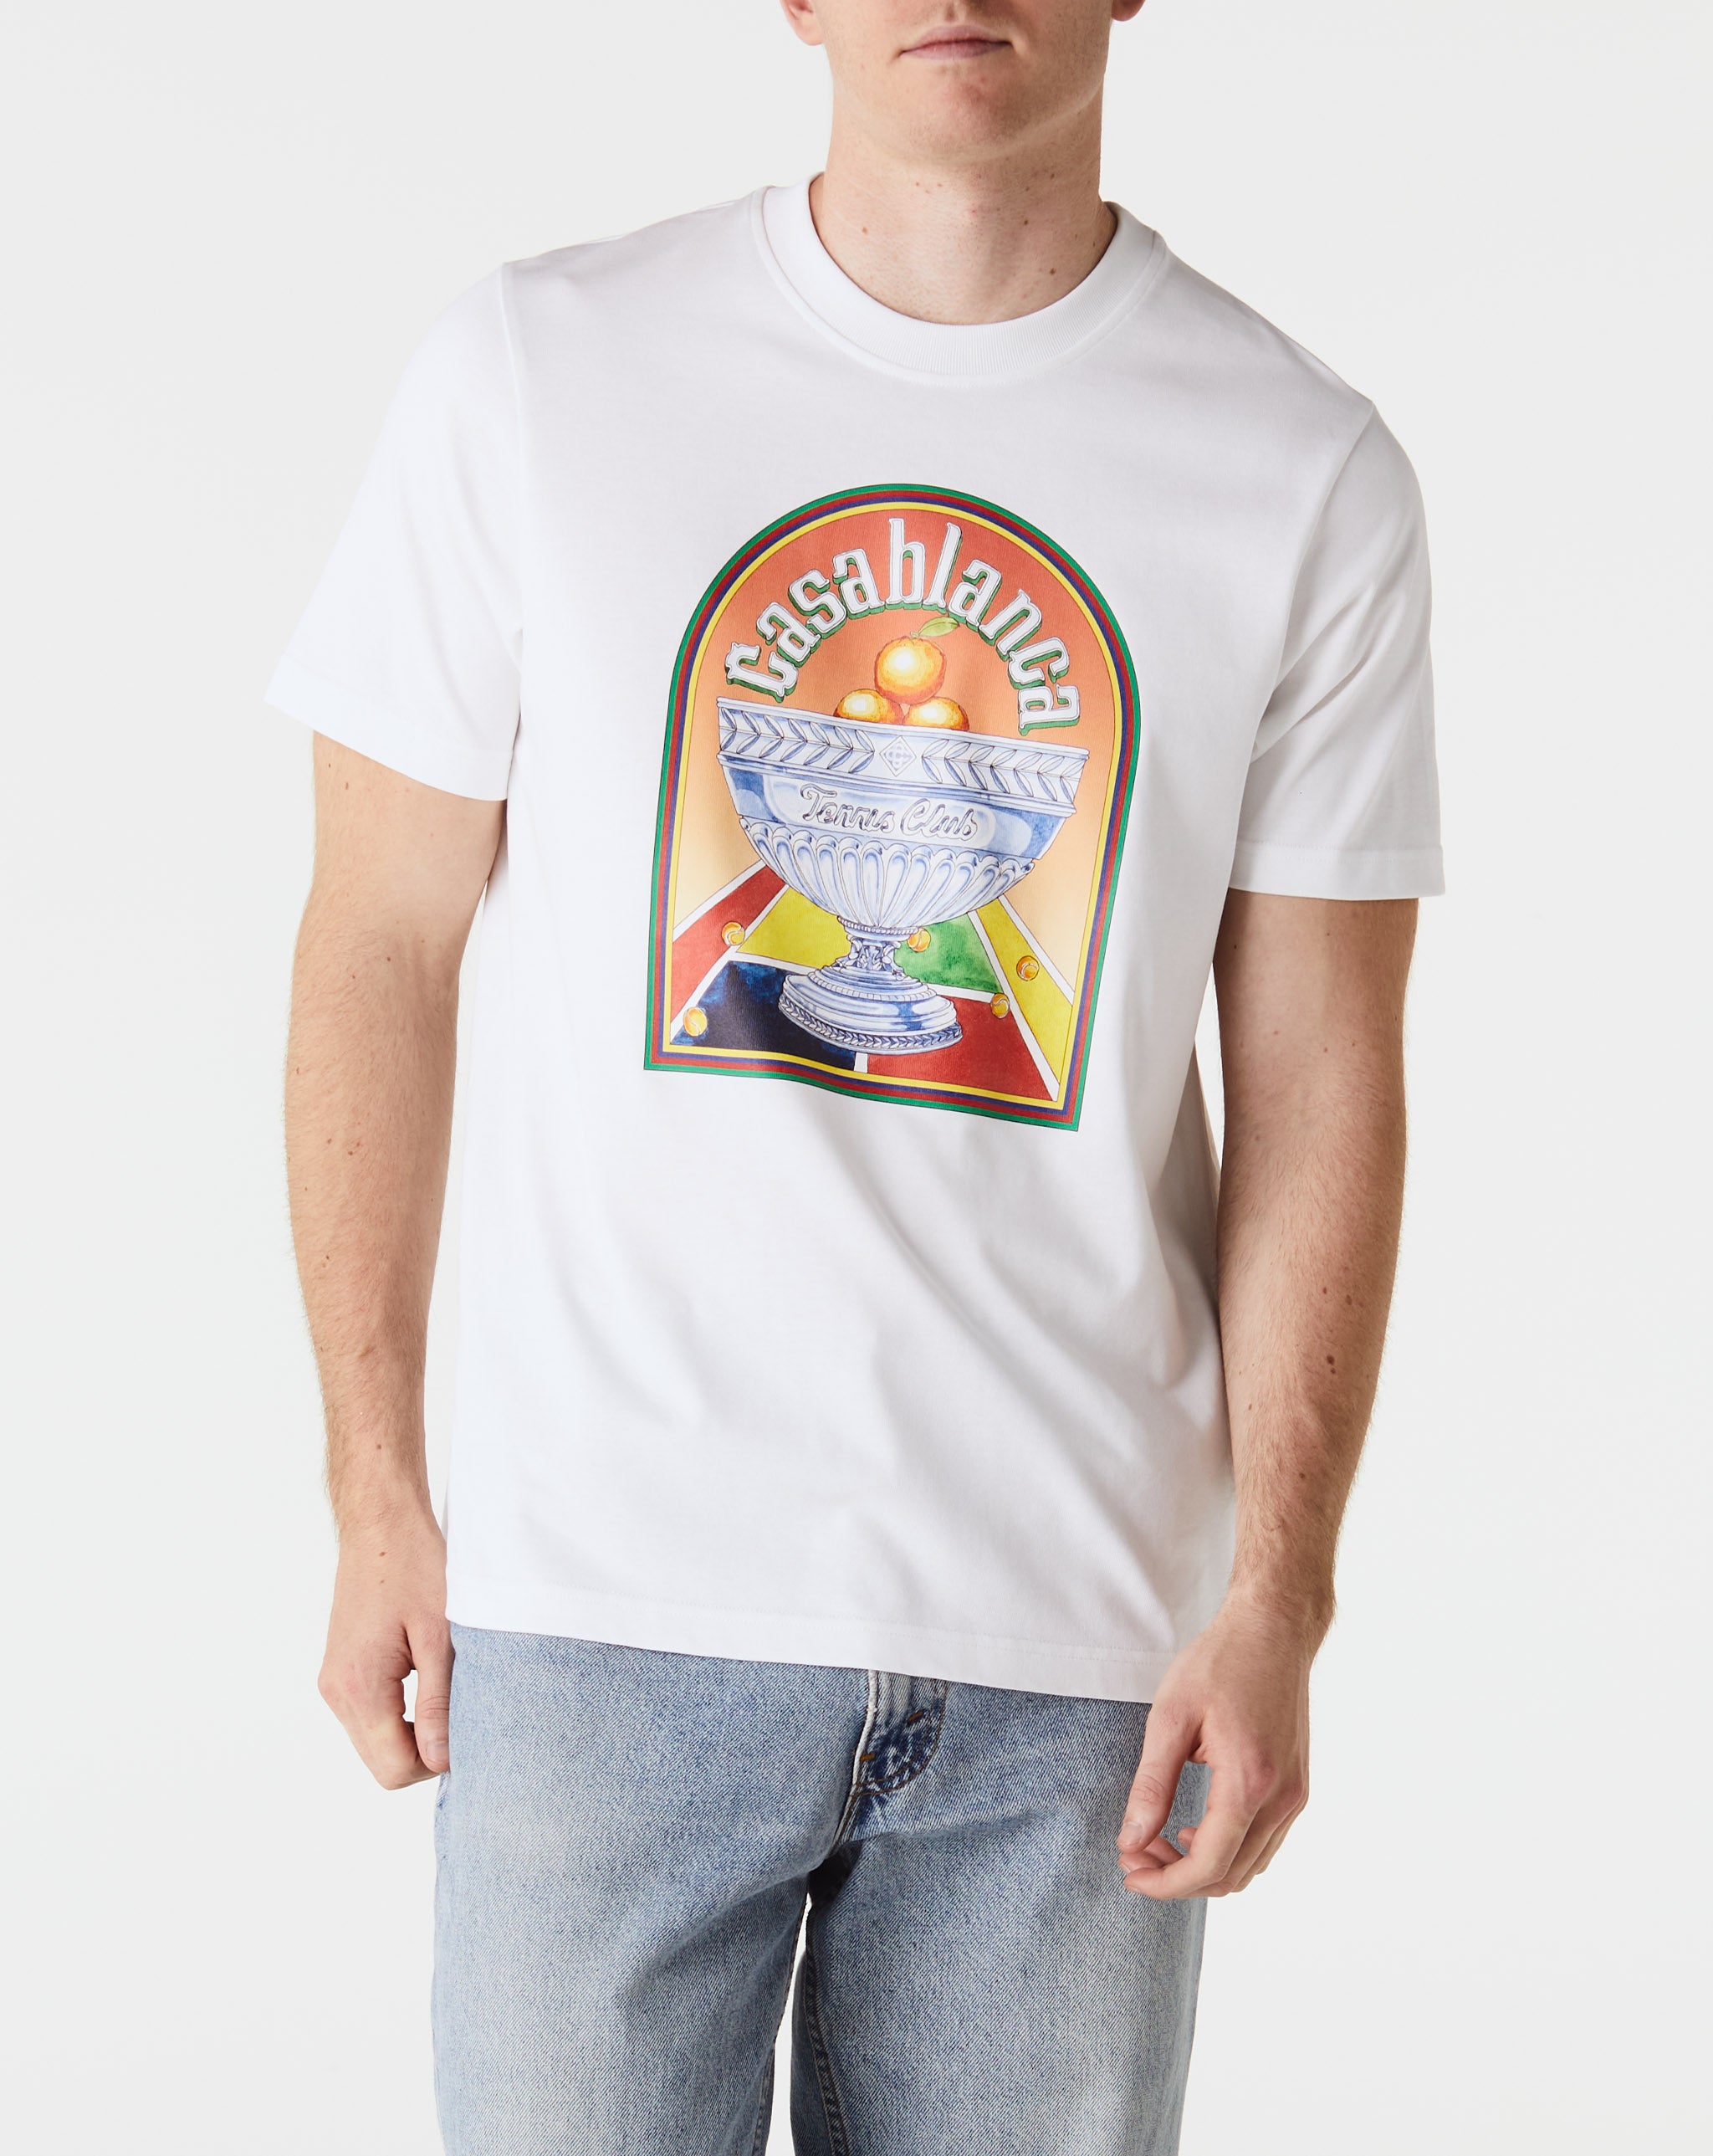 Casablanca Terrain D'Orange T-Shirt  - Cheap Urlfreeze Jordan outlet